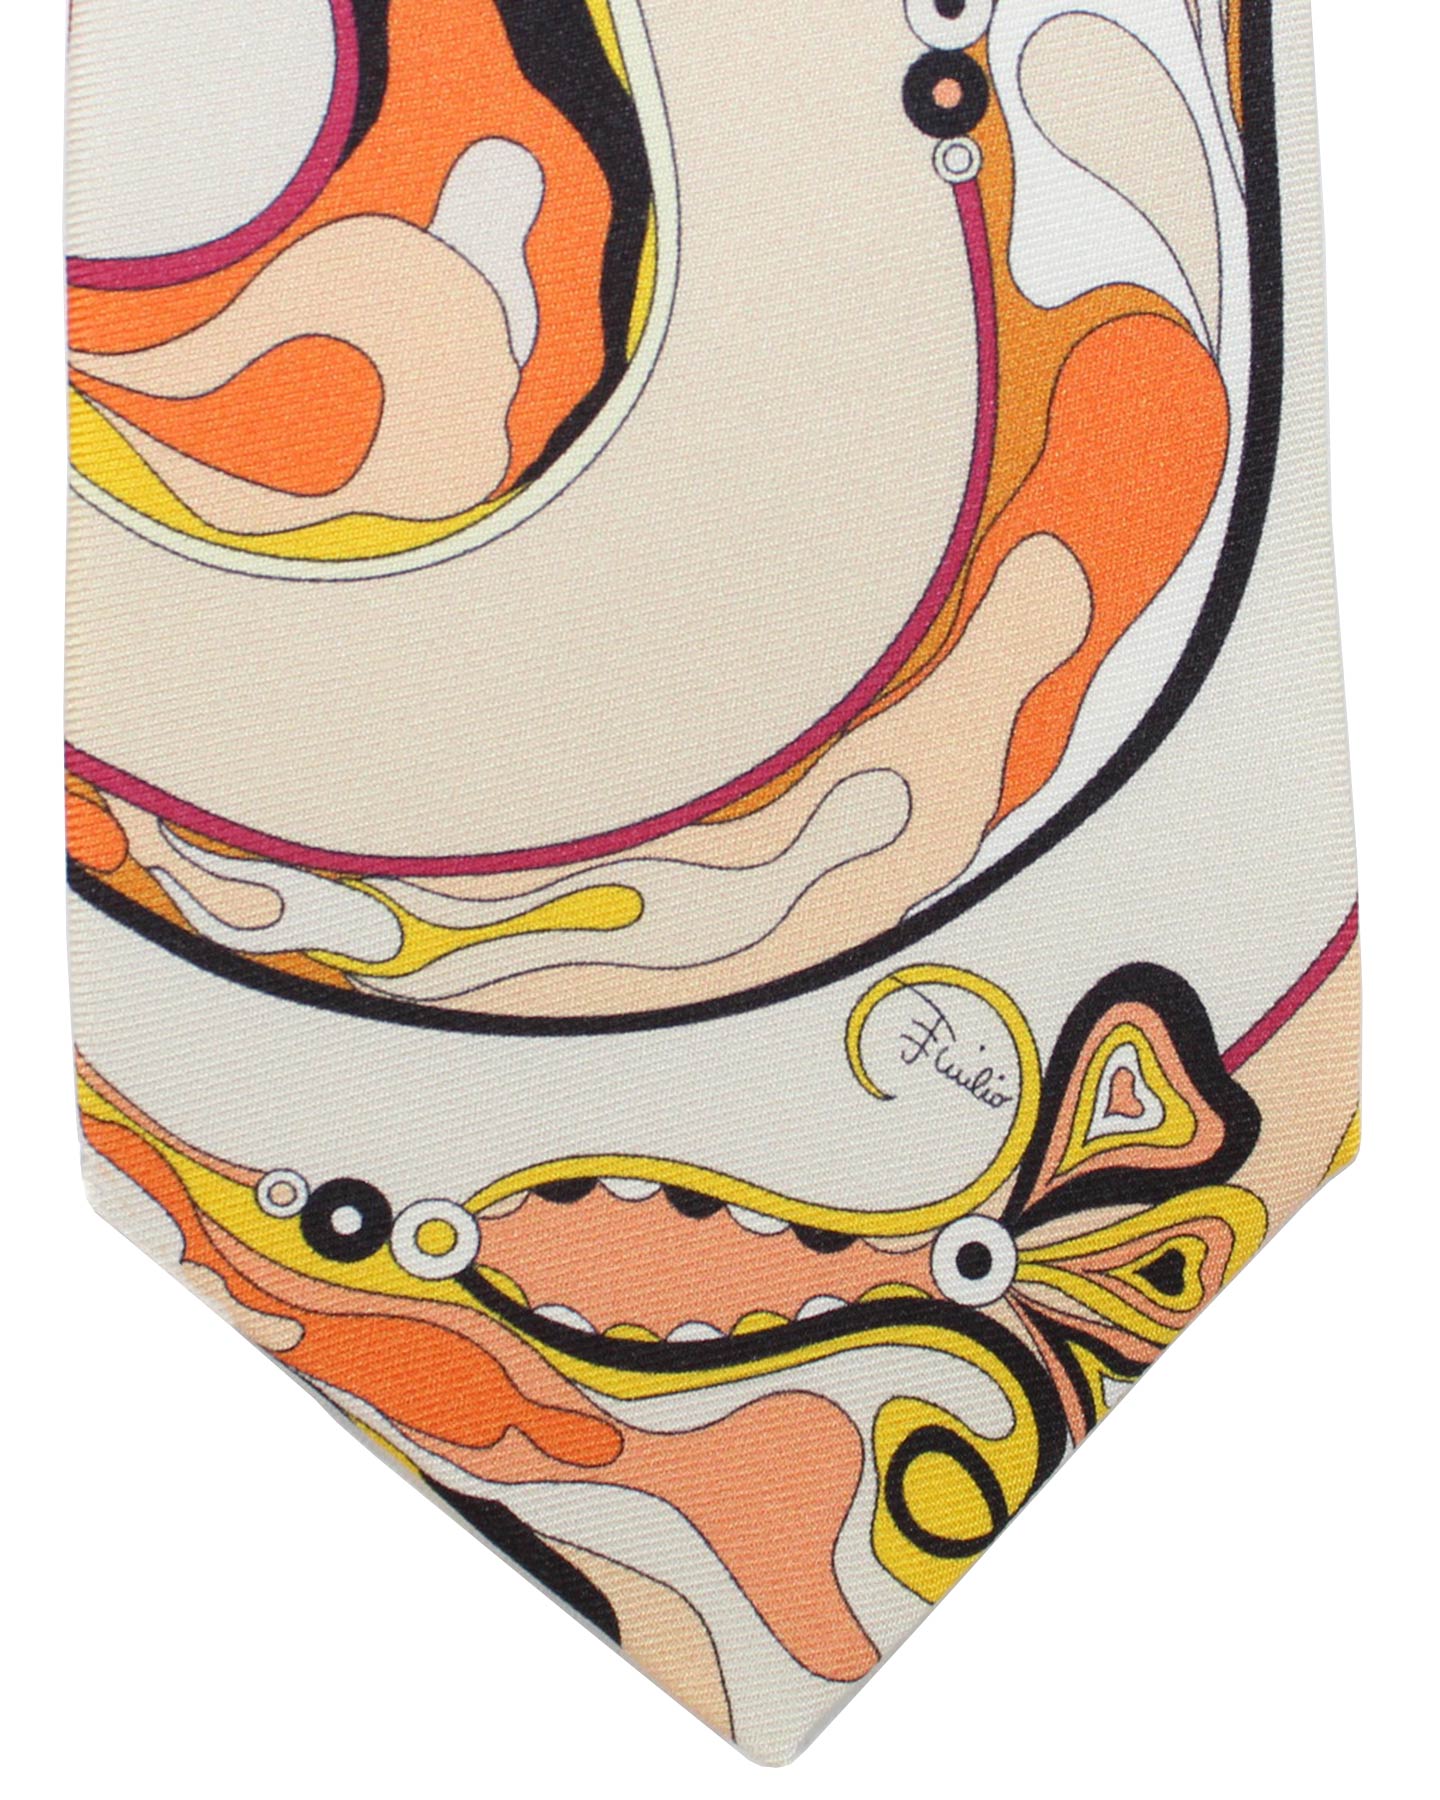 Emilio Pucci Silk Tie Signature Orange Peach Design